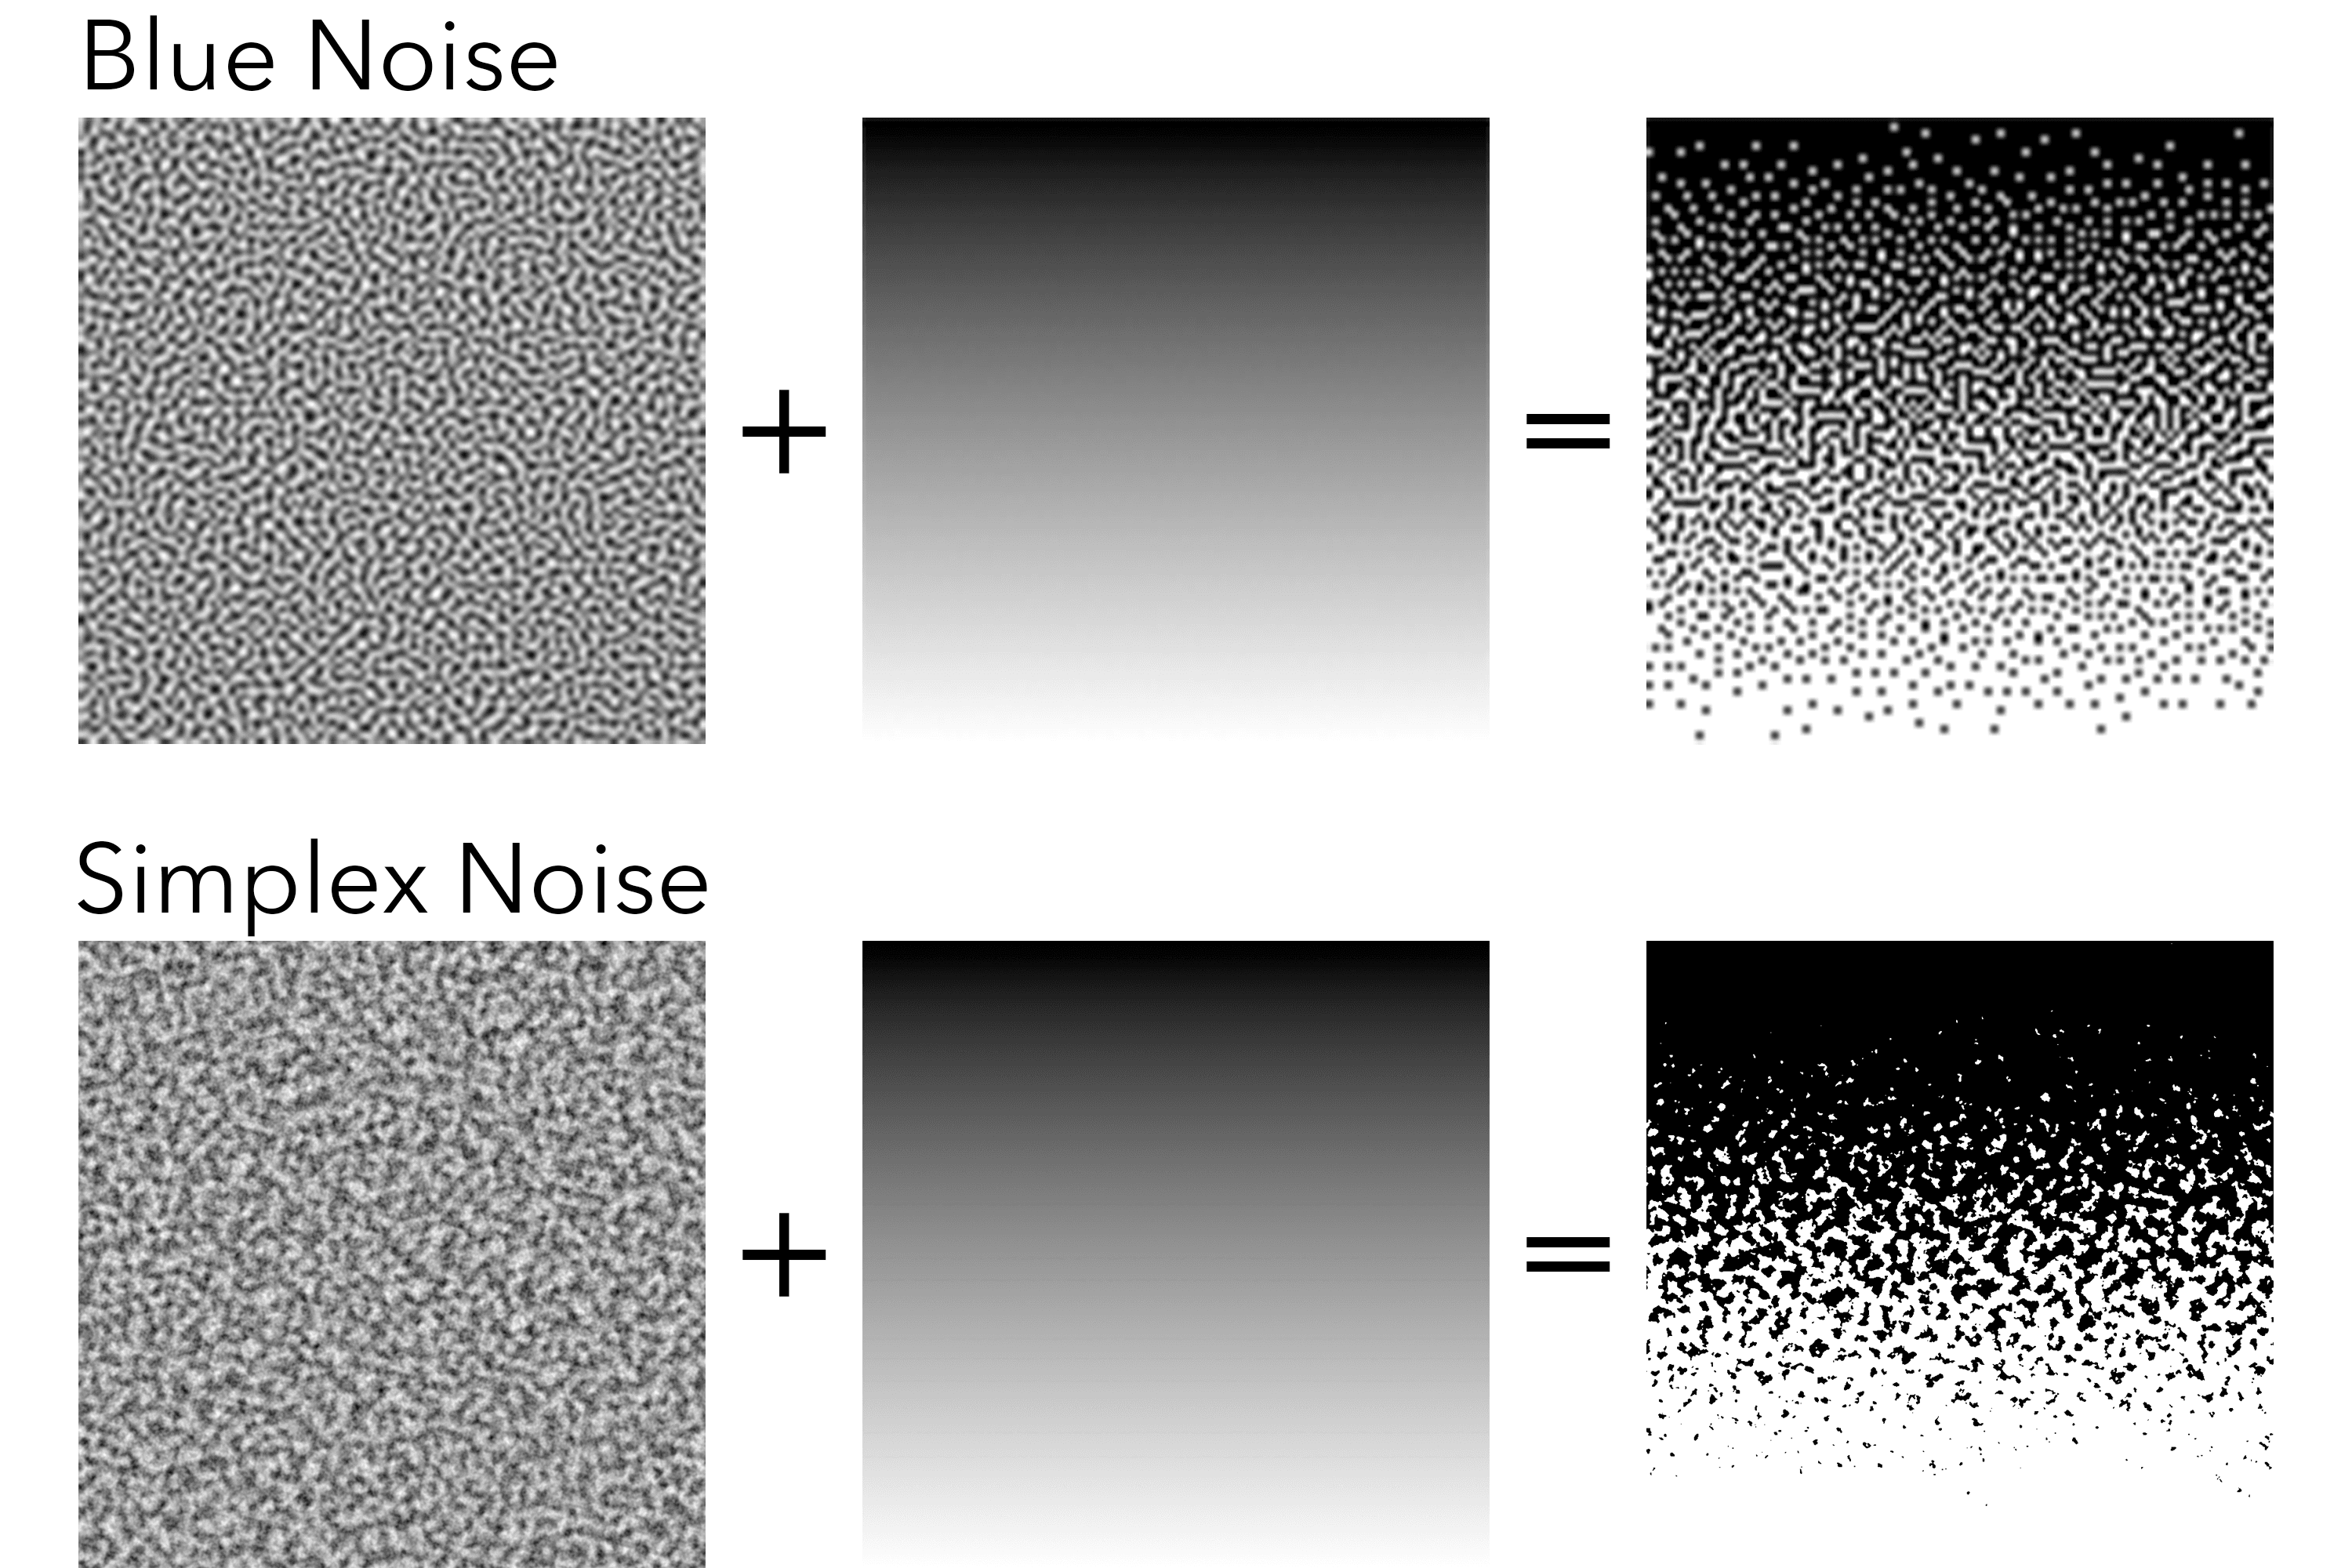 blue noise vs simplex noise for thresholding